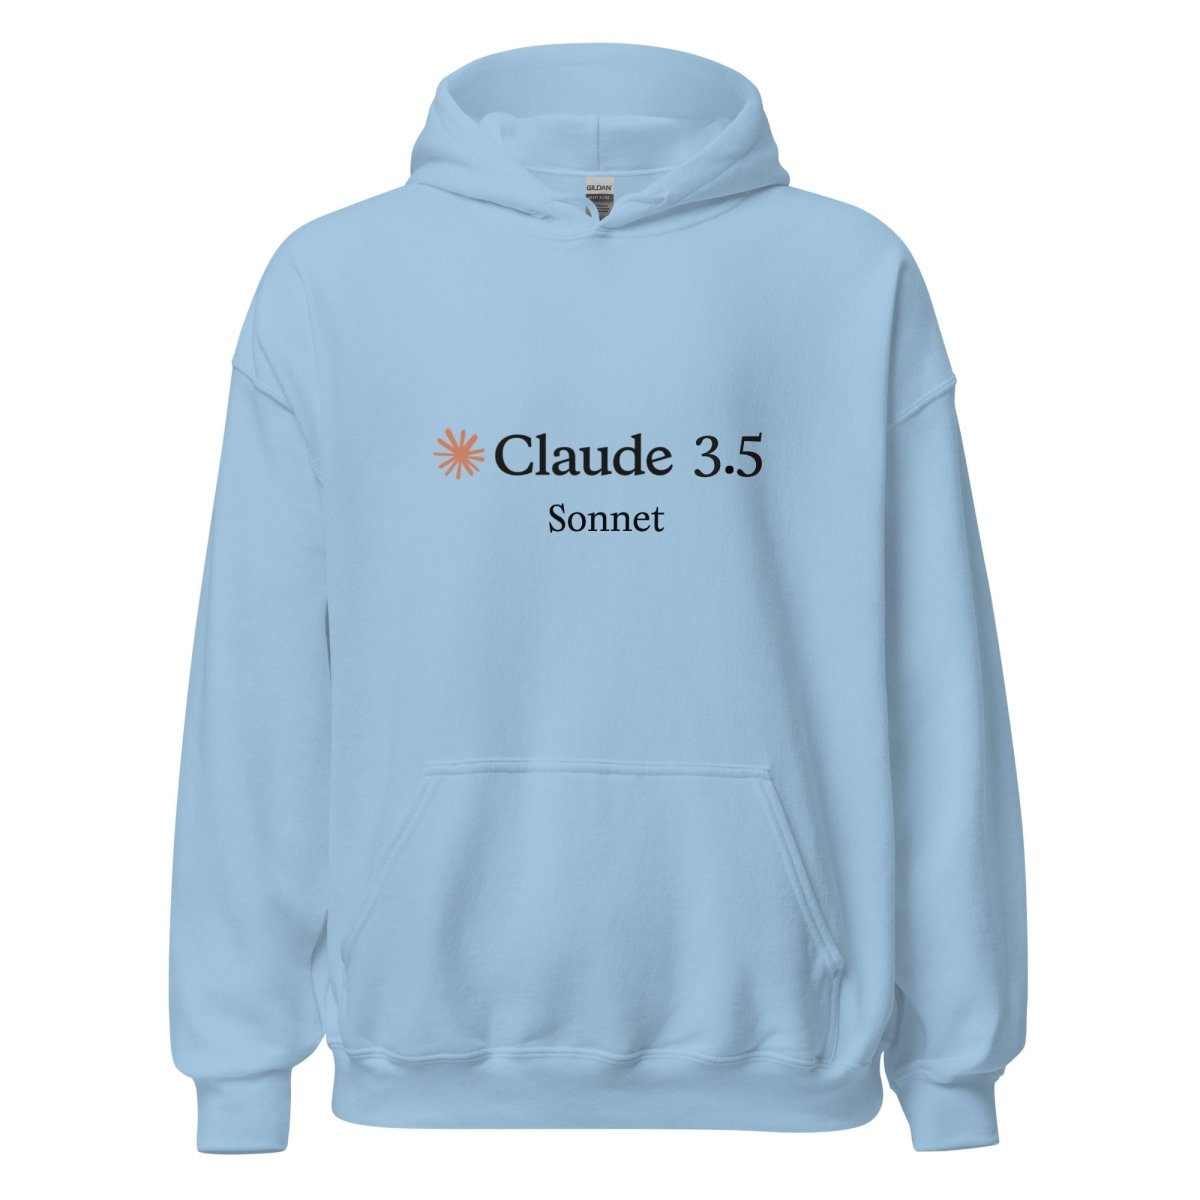 Claude 3.5 Sonnet Hoodie (unisex) - Light Blue - AI Store